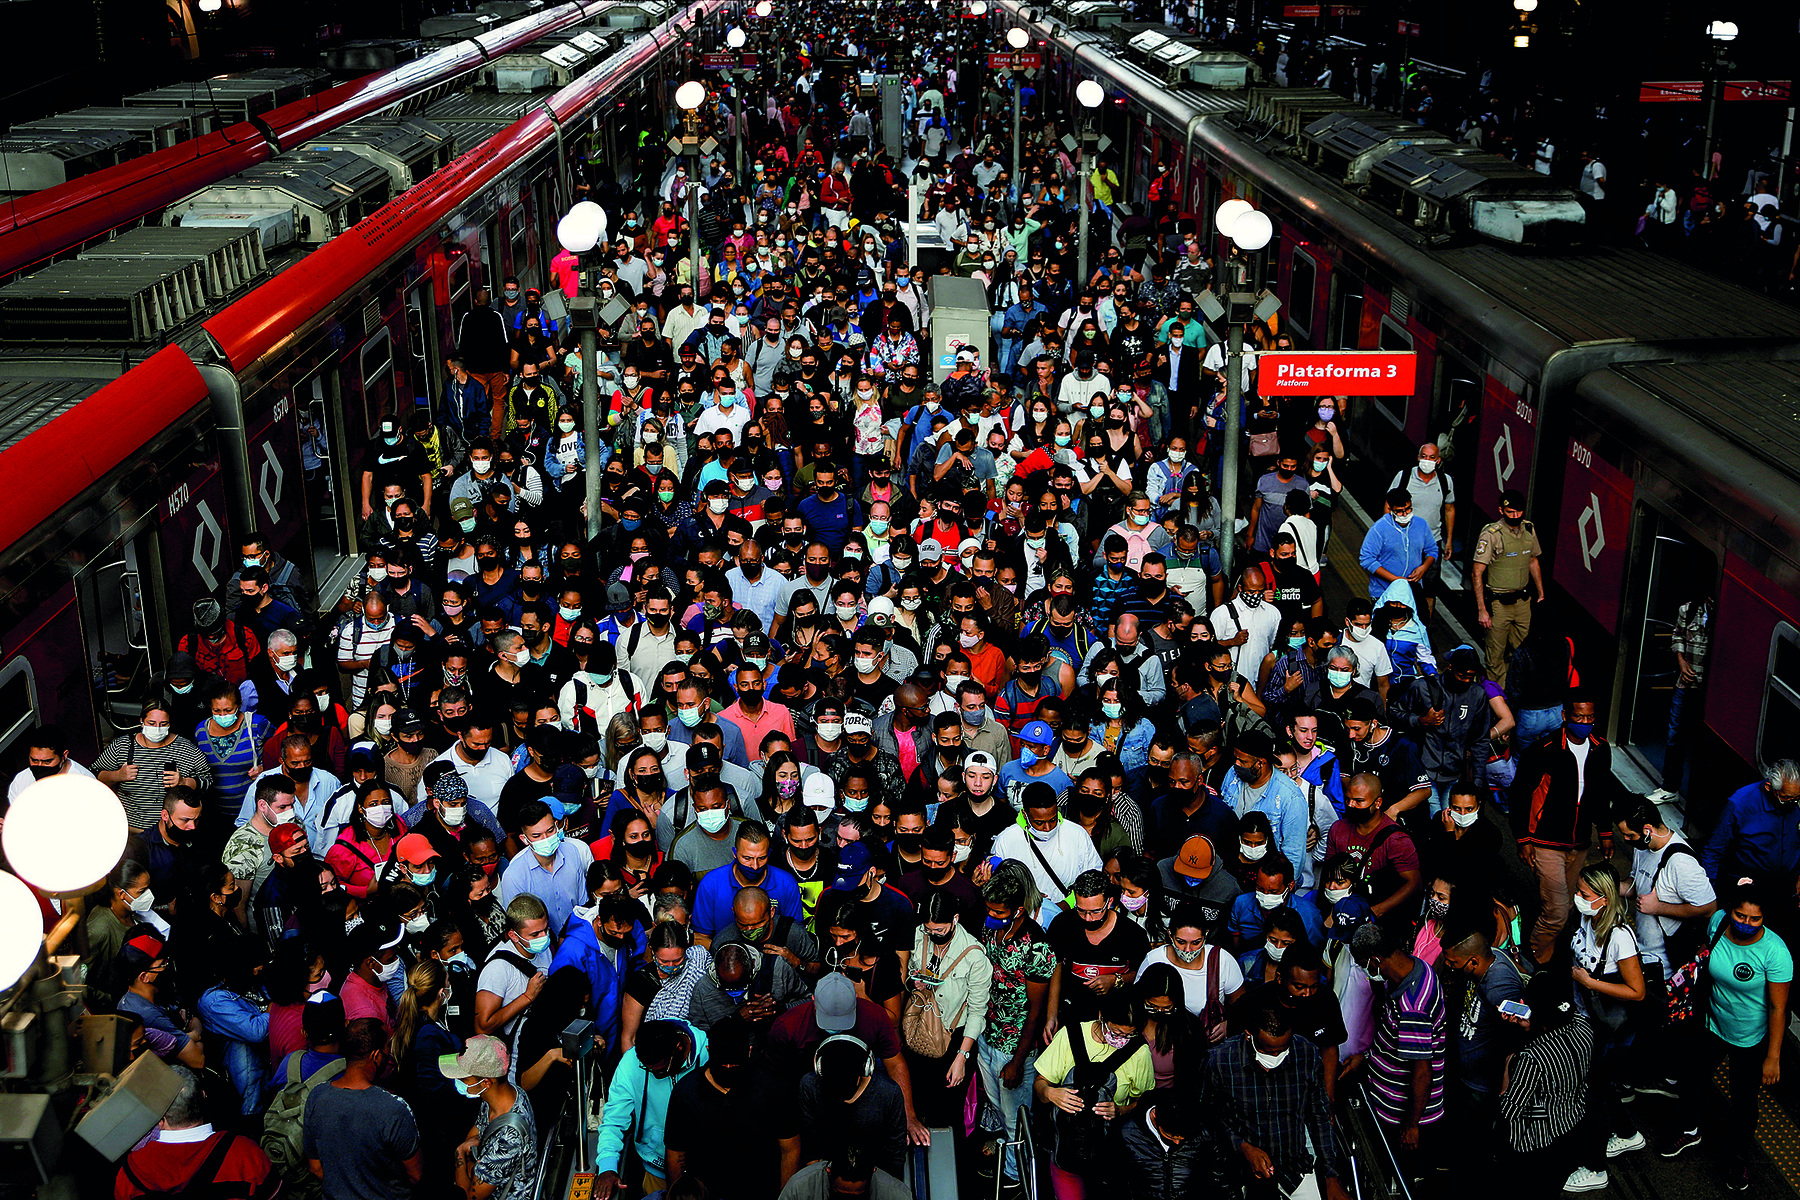 Fotografia. Uma multidão de pessoas espremidas em uma plataforma de estação de trem. Dois trens cinzas com linhas vermelhas estão parados com as portas abertas, um de cada lado da plataforma.